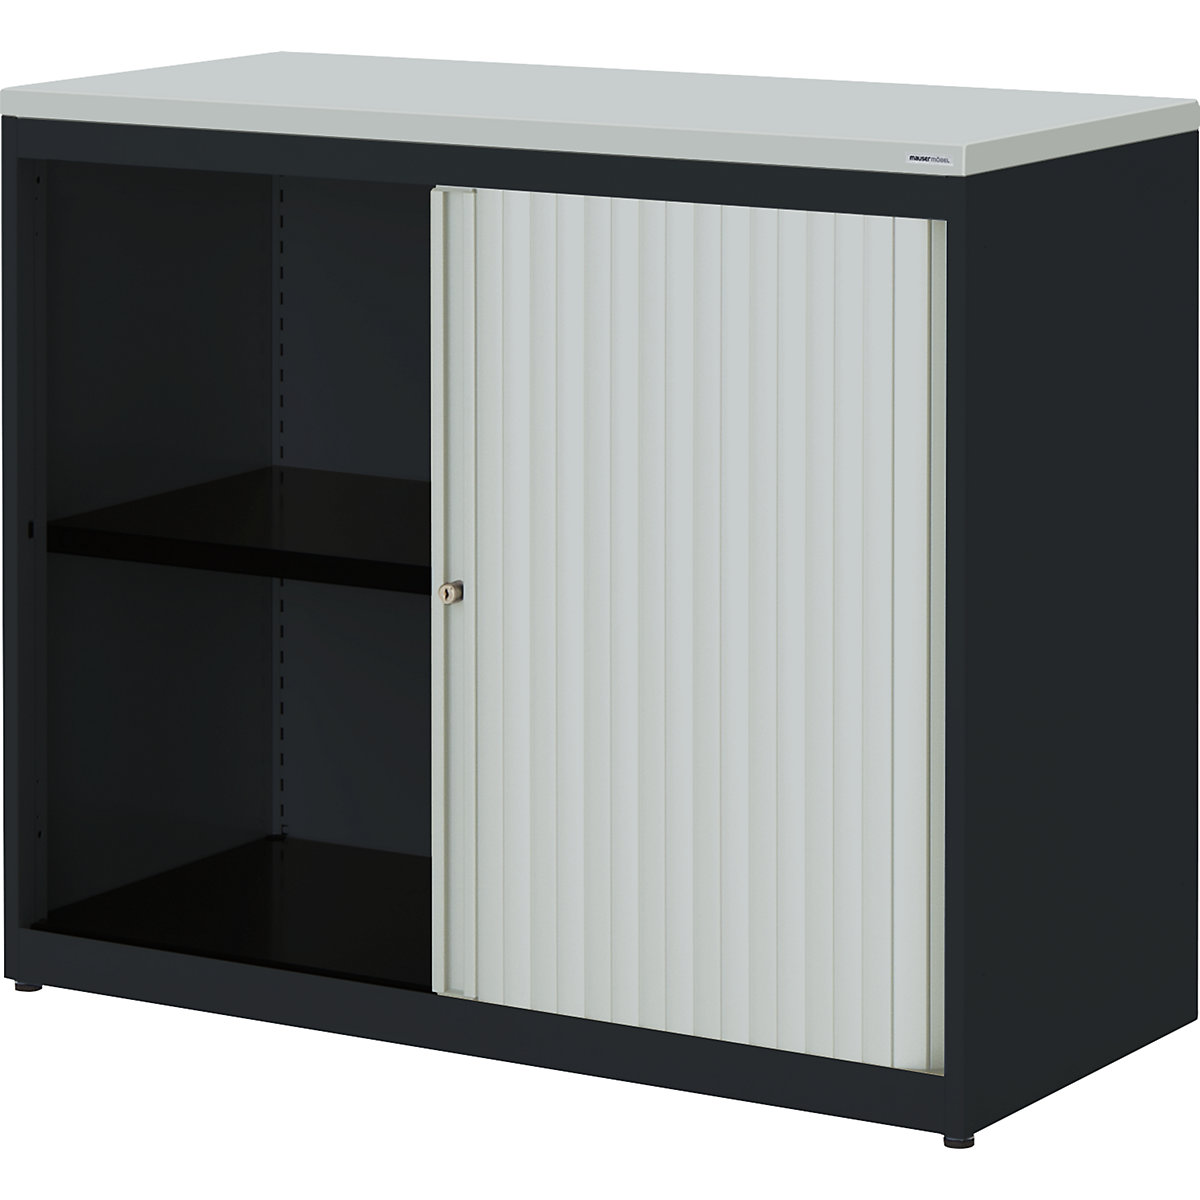 Horizontal roller shutter cupboard – mauser, HxWxD 830 x 1000 x 432 mm, plastic panel, 1 shelf, charcoal / light grey / light grey-2